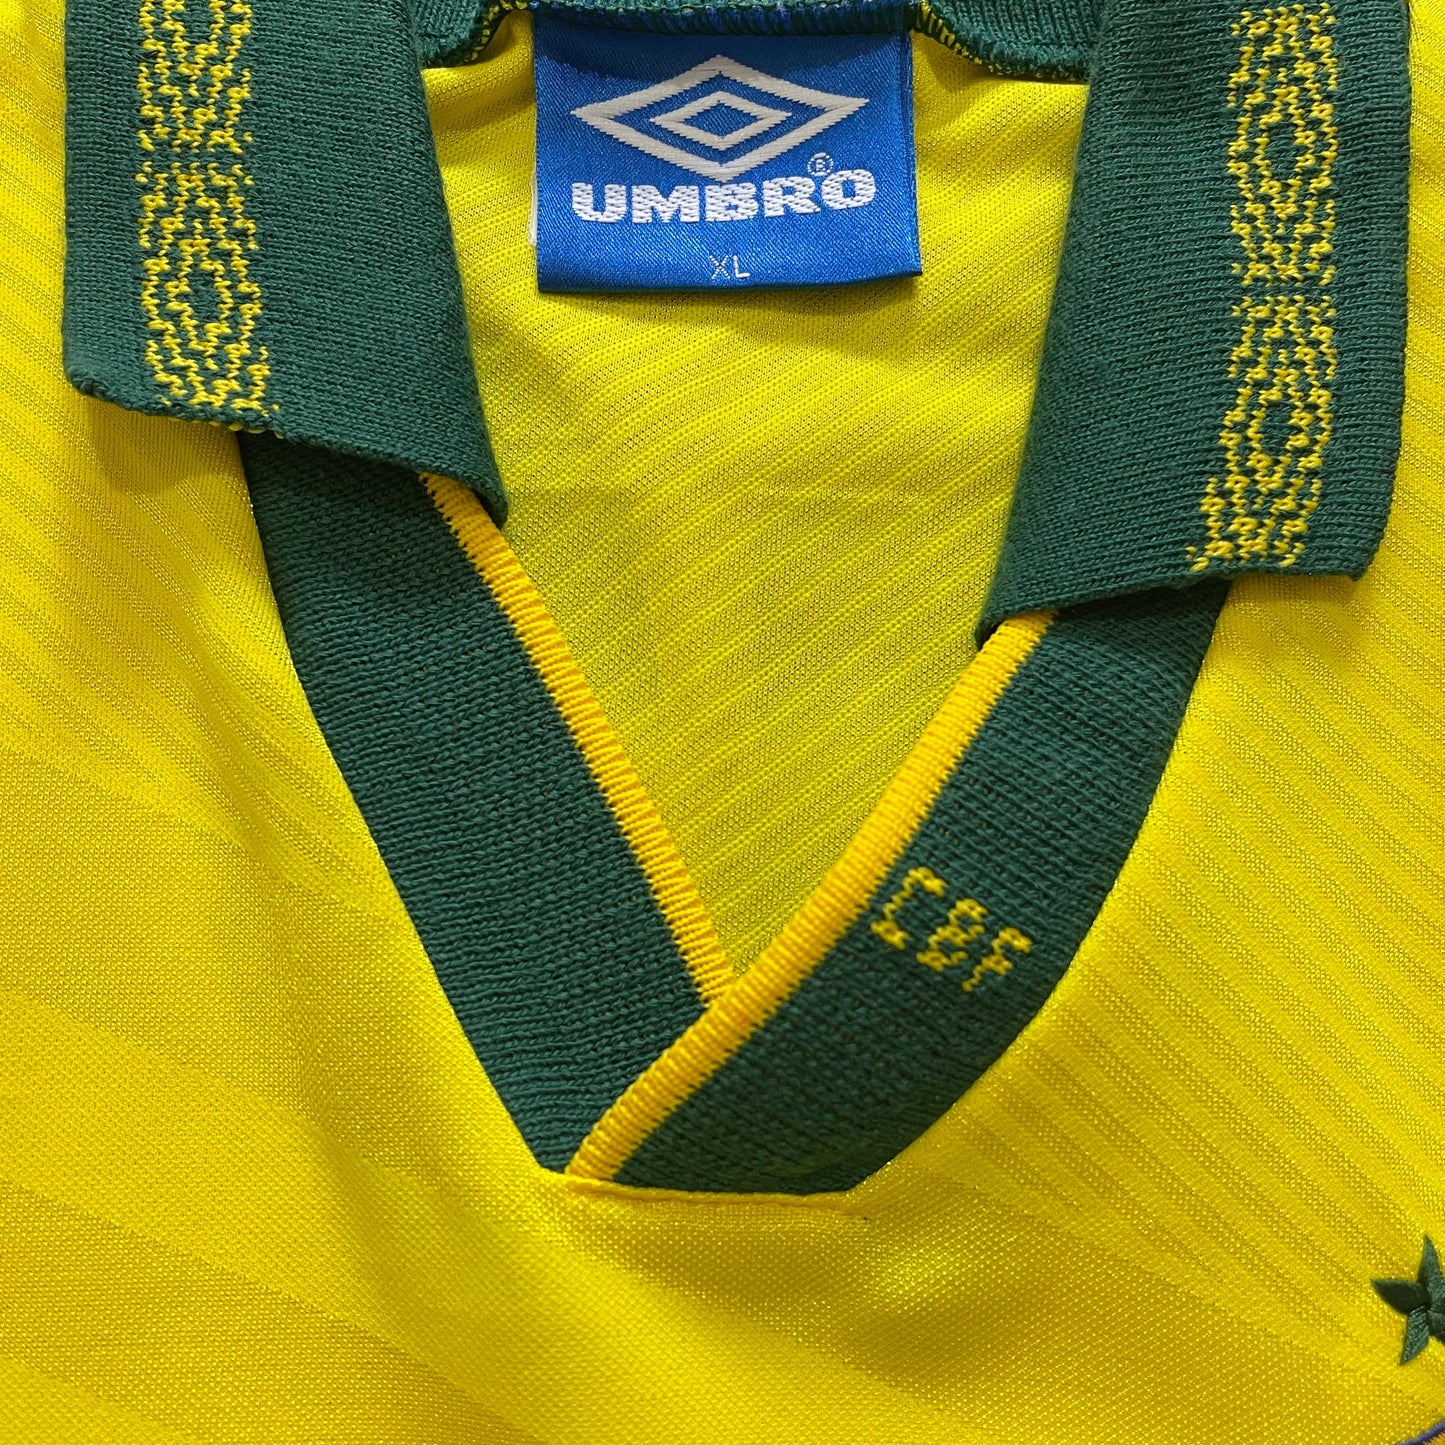 <tc>1994 Mundial Brasil camiseta local #11 Romario (XL)</tc>